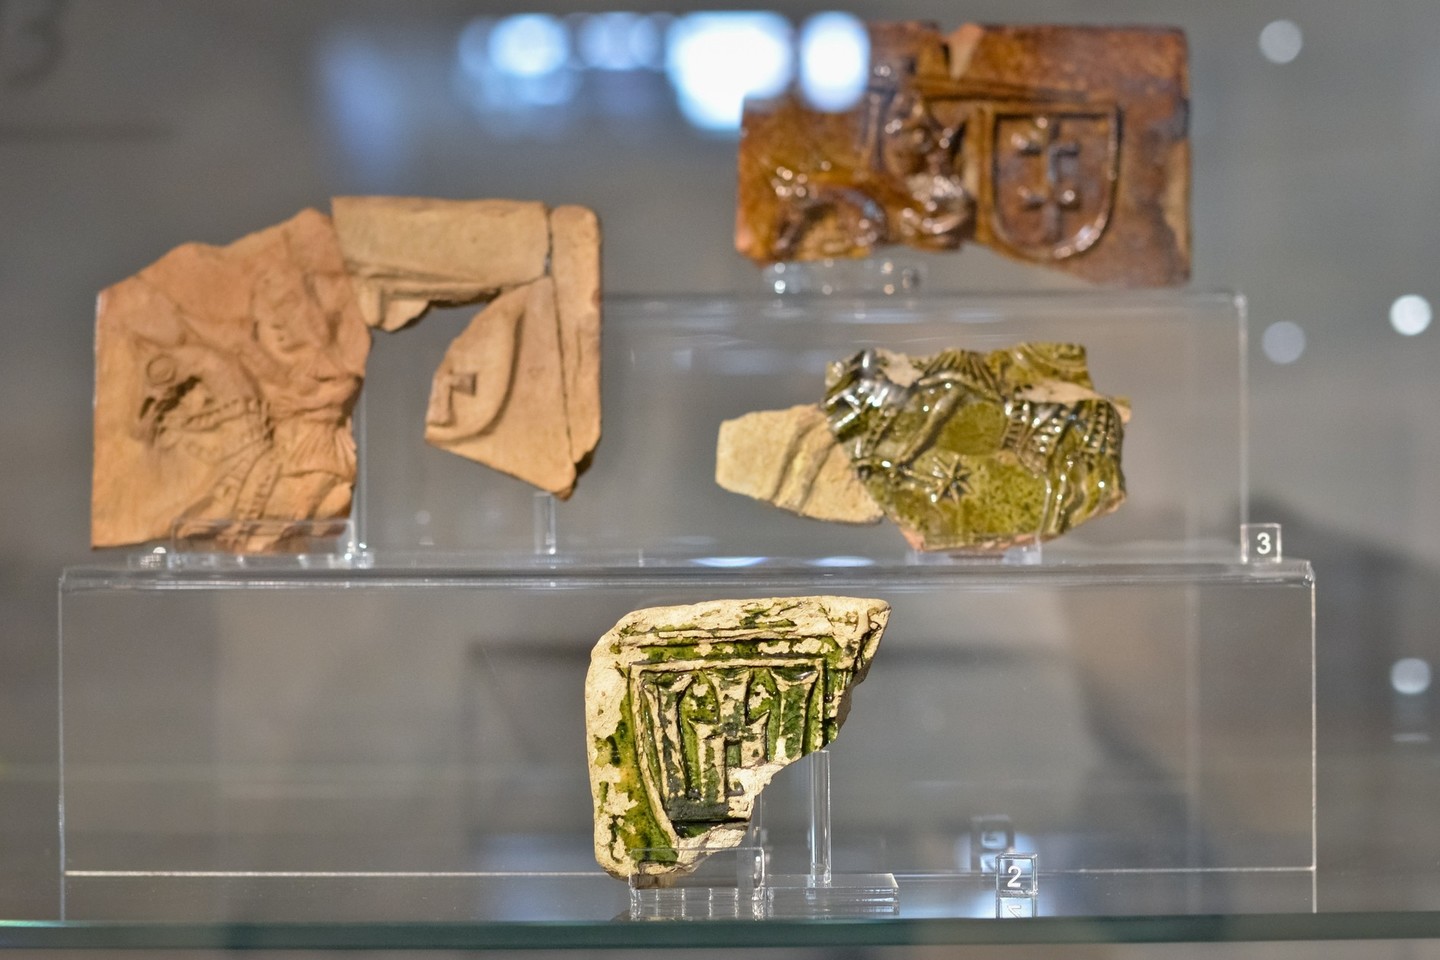 Valdovų rūmuose sukaupta turtinga archeologinių radinių kolekcija.<br>R.Danisevičiaus nuotr.